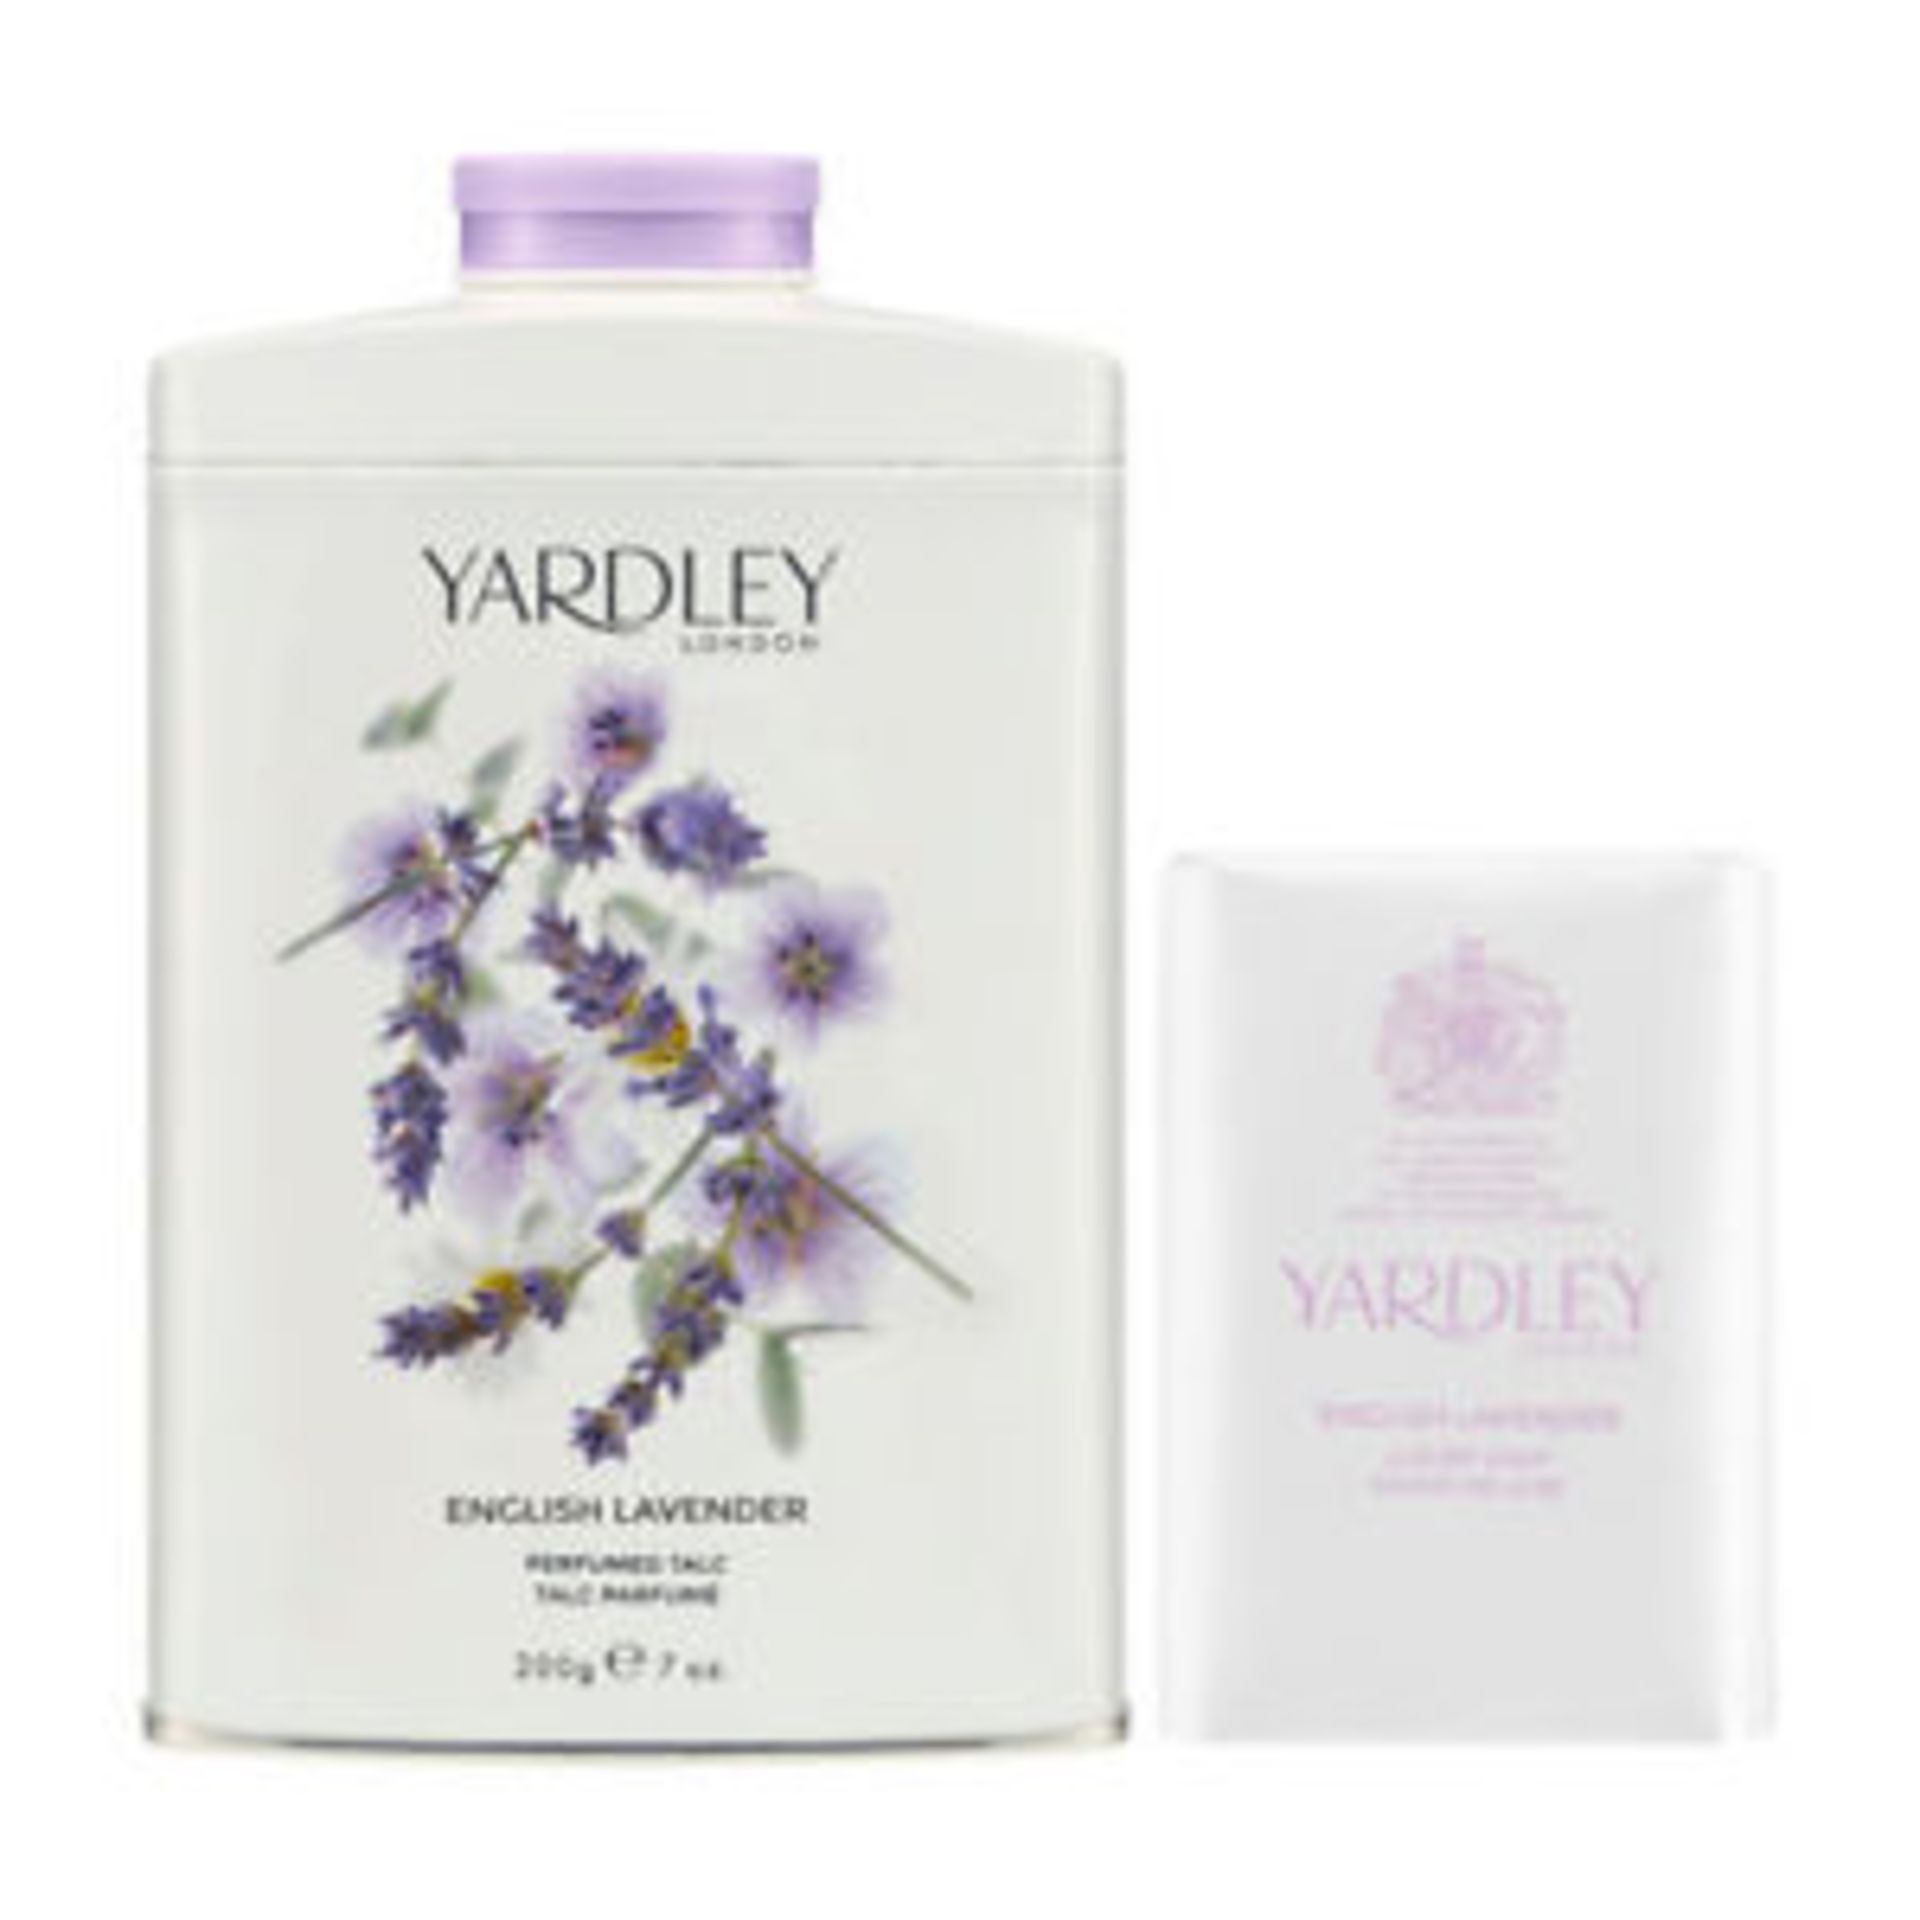 V Brand New Yardley English Lavender Talc & Soap Set